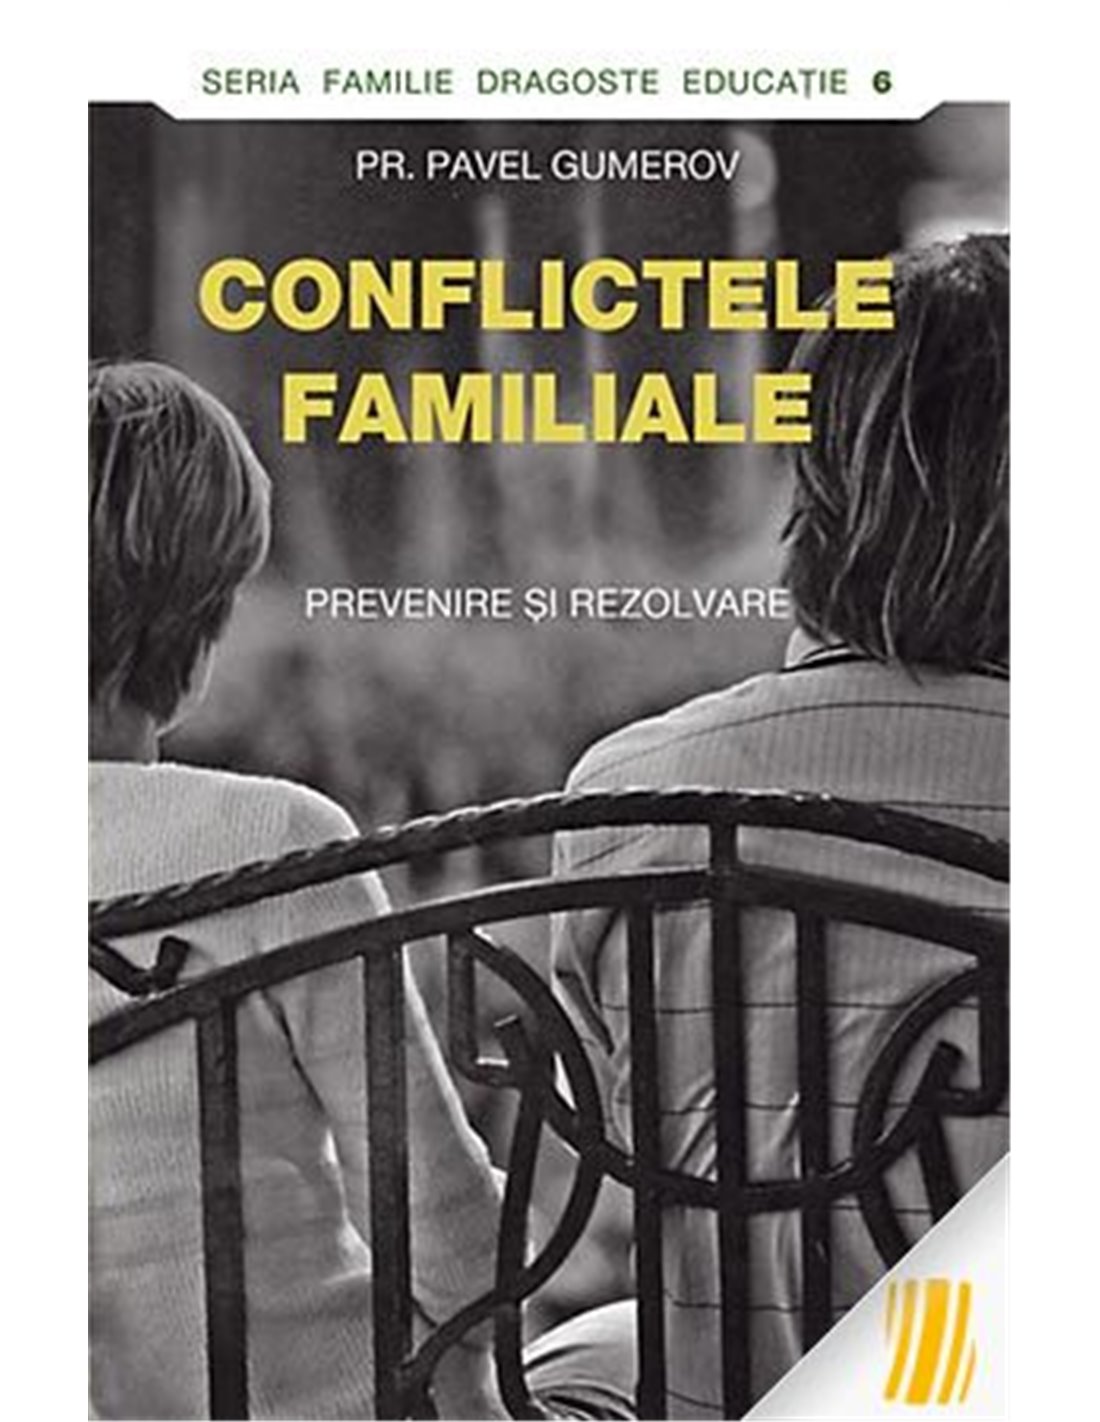 Conflictele familiale - Pavel Gumerov | Editura Sophia